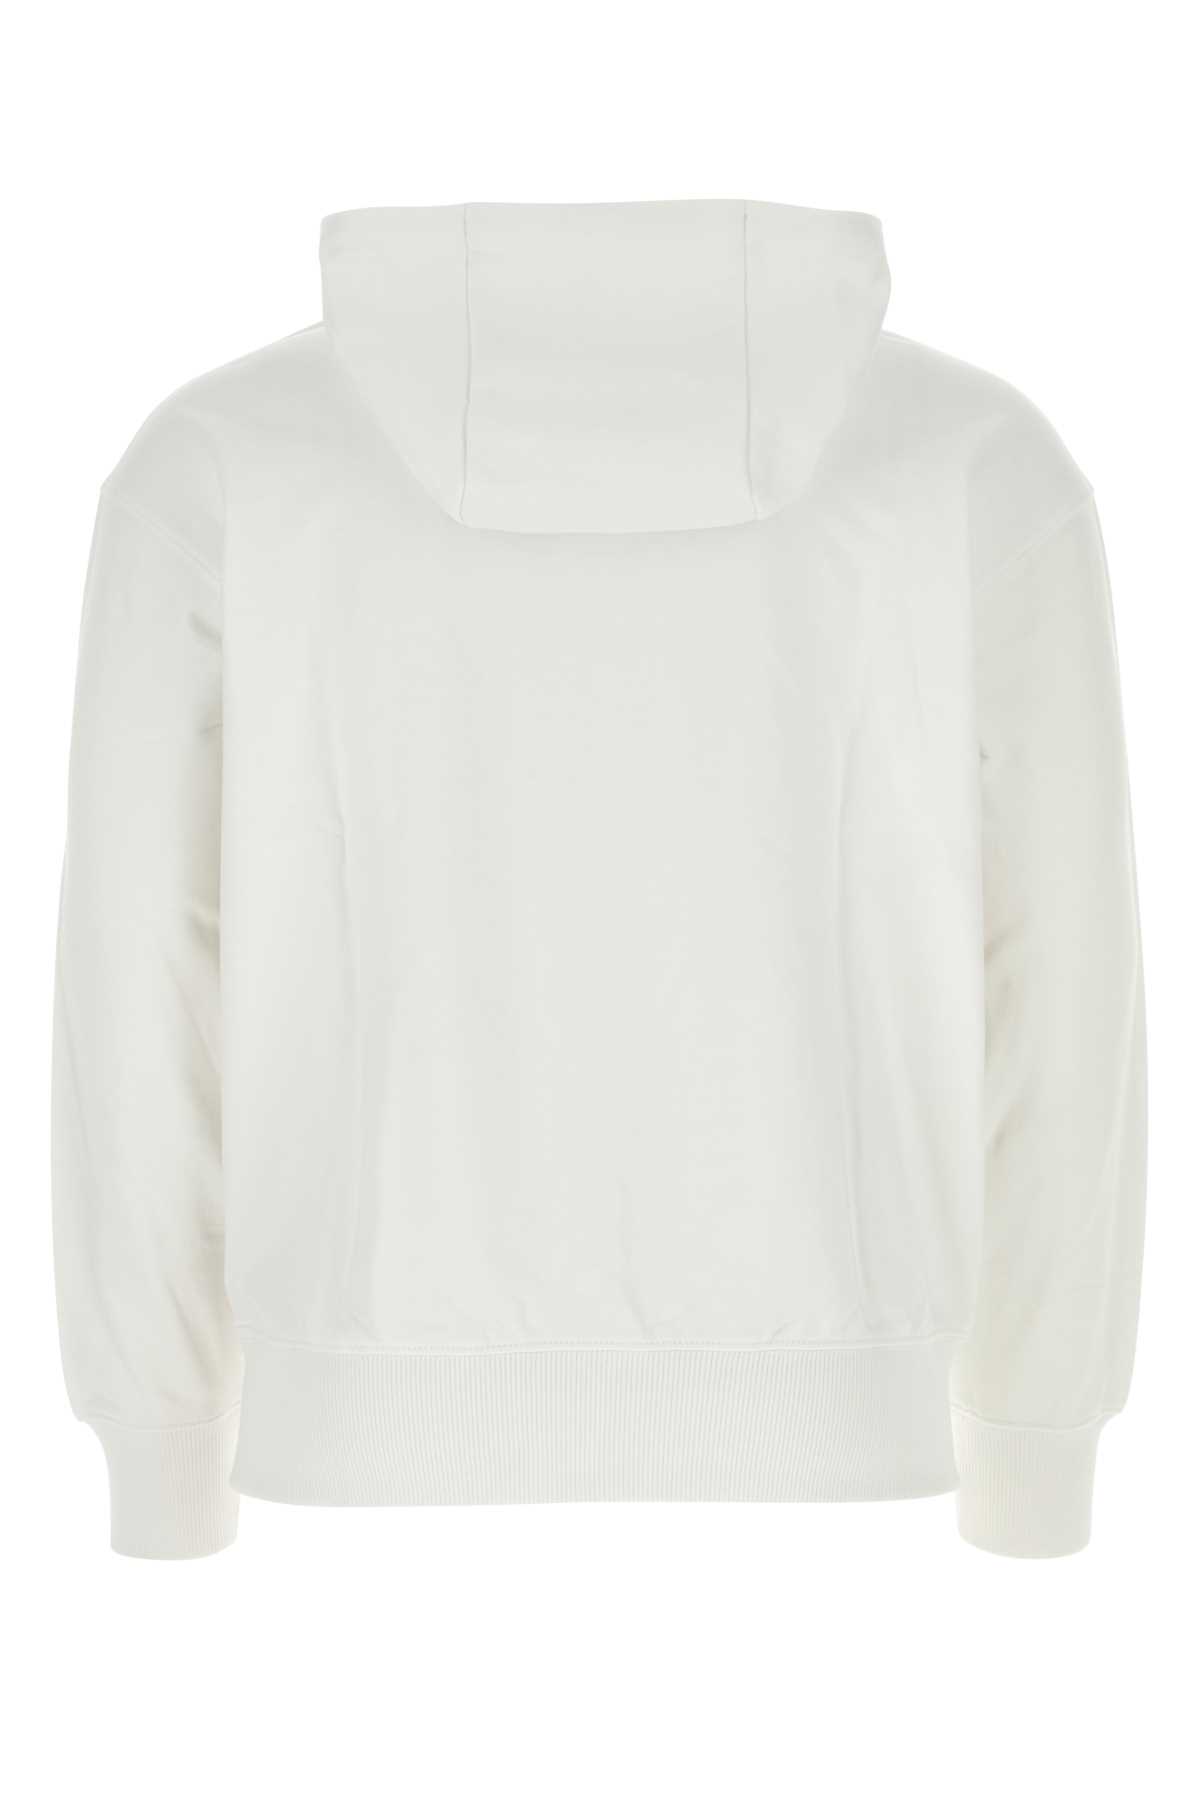 Hugo Boss White Cotton Sweatshirt